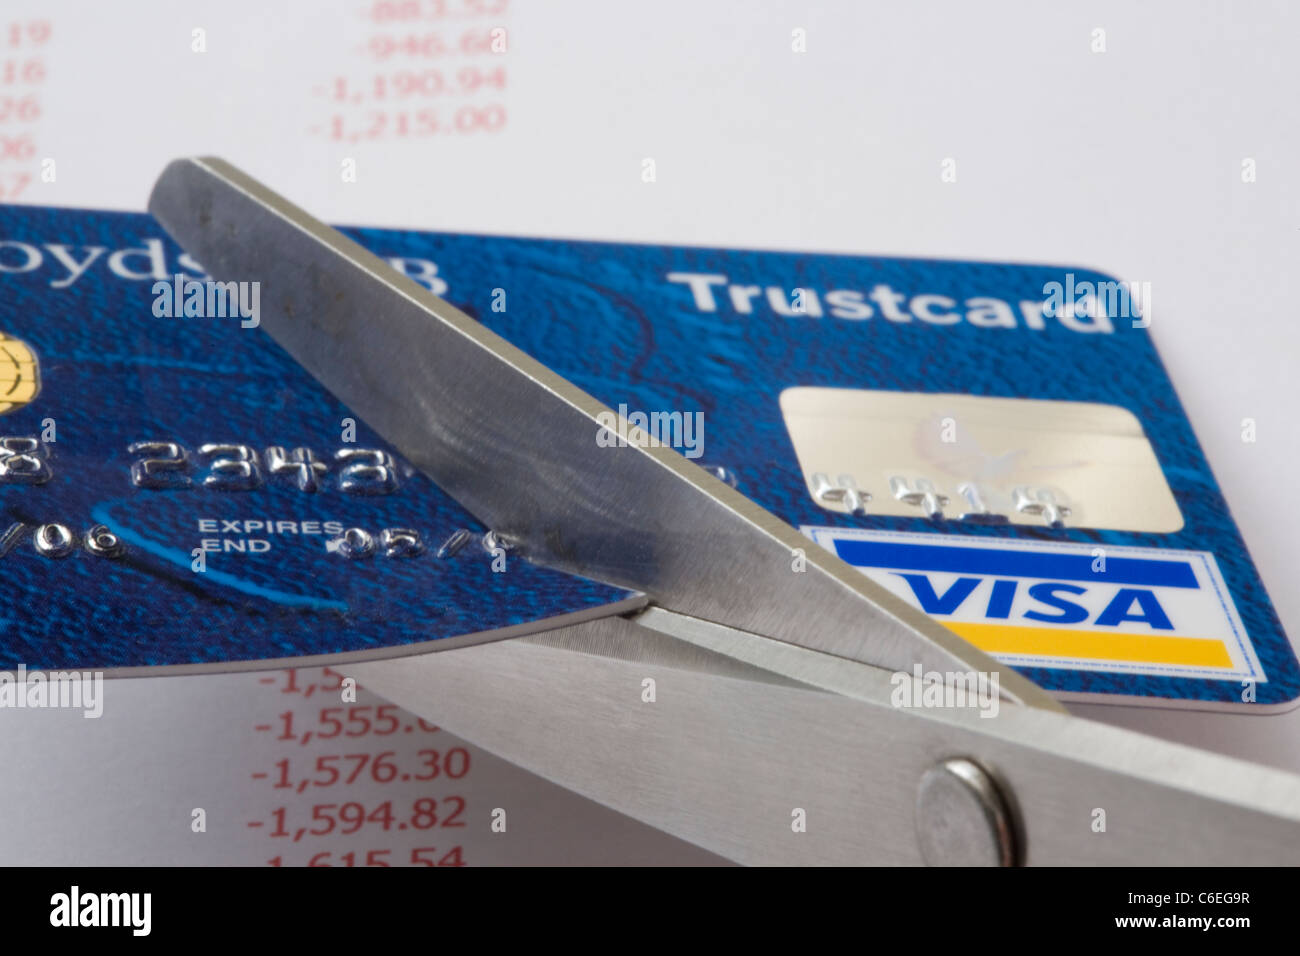 Un paio di forbici il taglio di una carta di credito Visa in stretta fino al di sopra di un foglio di conti che mostra i debiti in rosso. Inghilterra, Regno Unito, Gran Bretagna Foto Stock